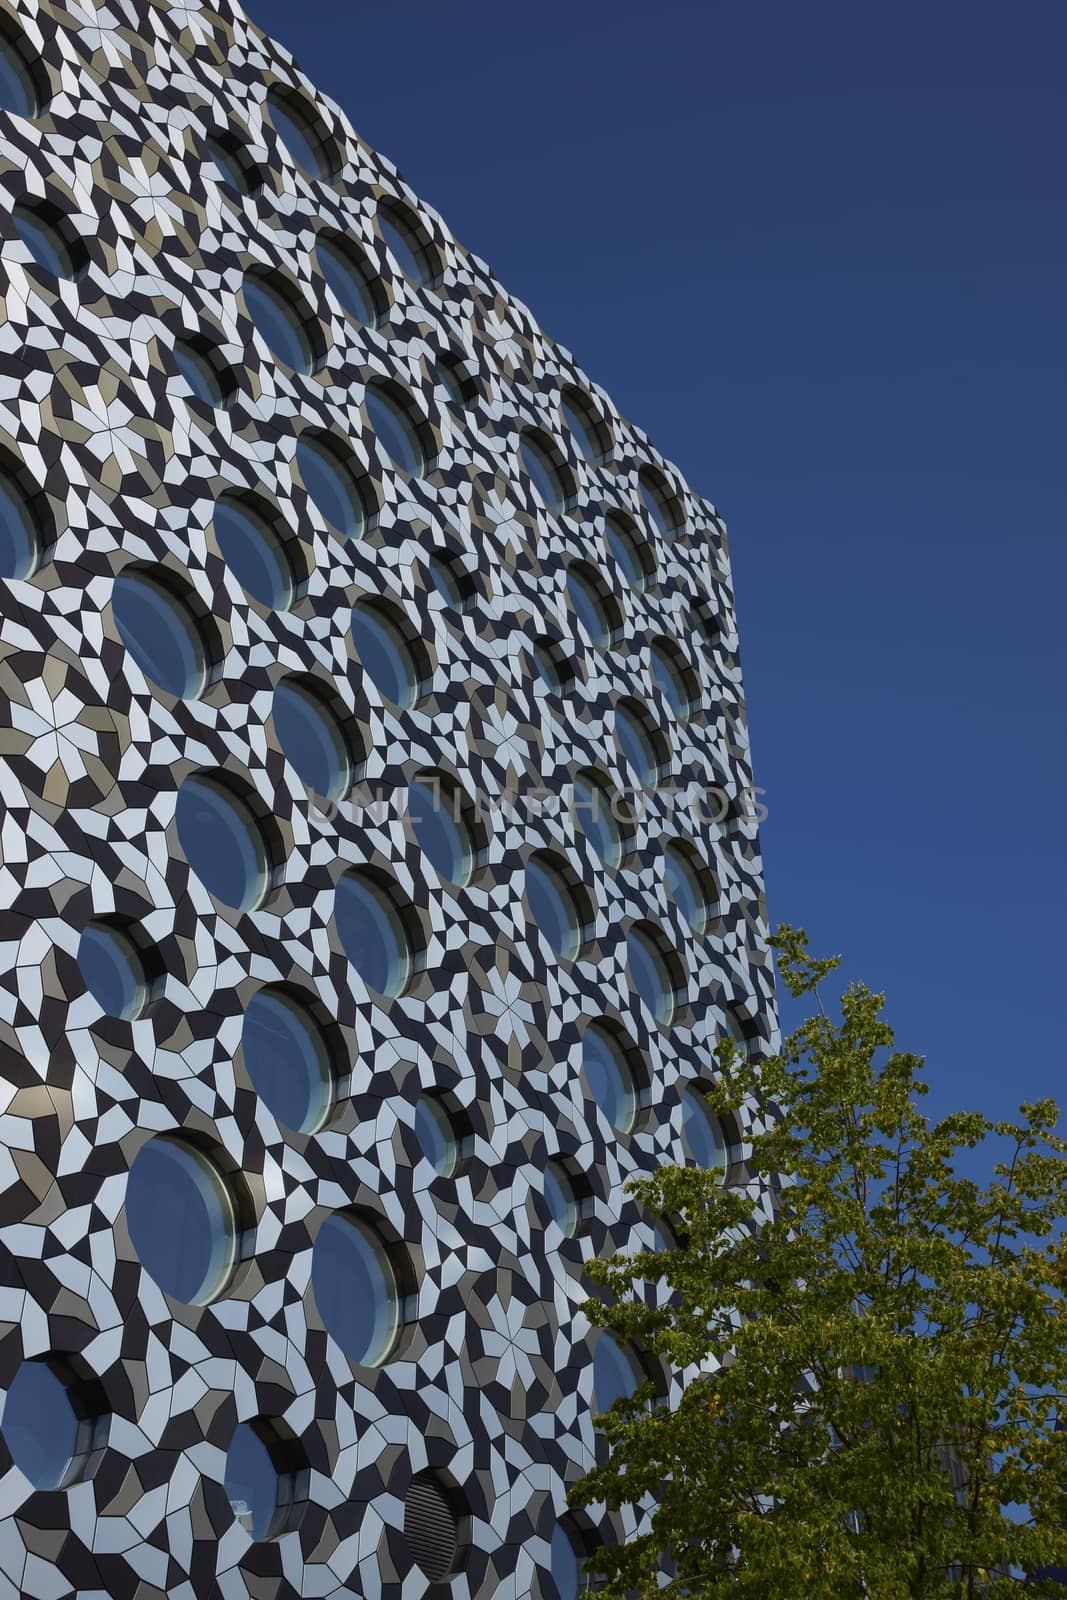 Circular windows in a steel clad modern building in London, United Kingdom